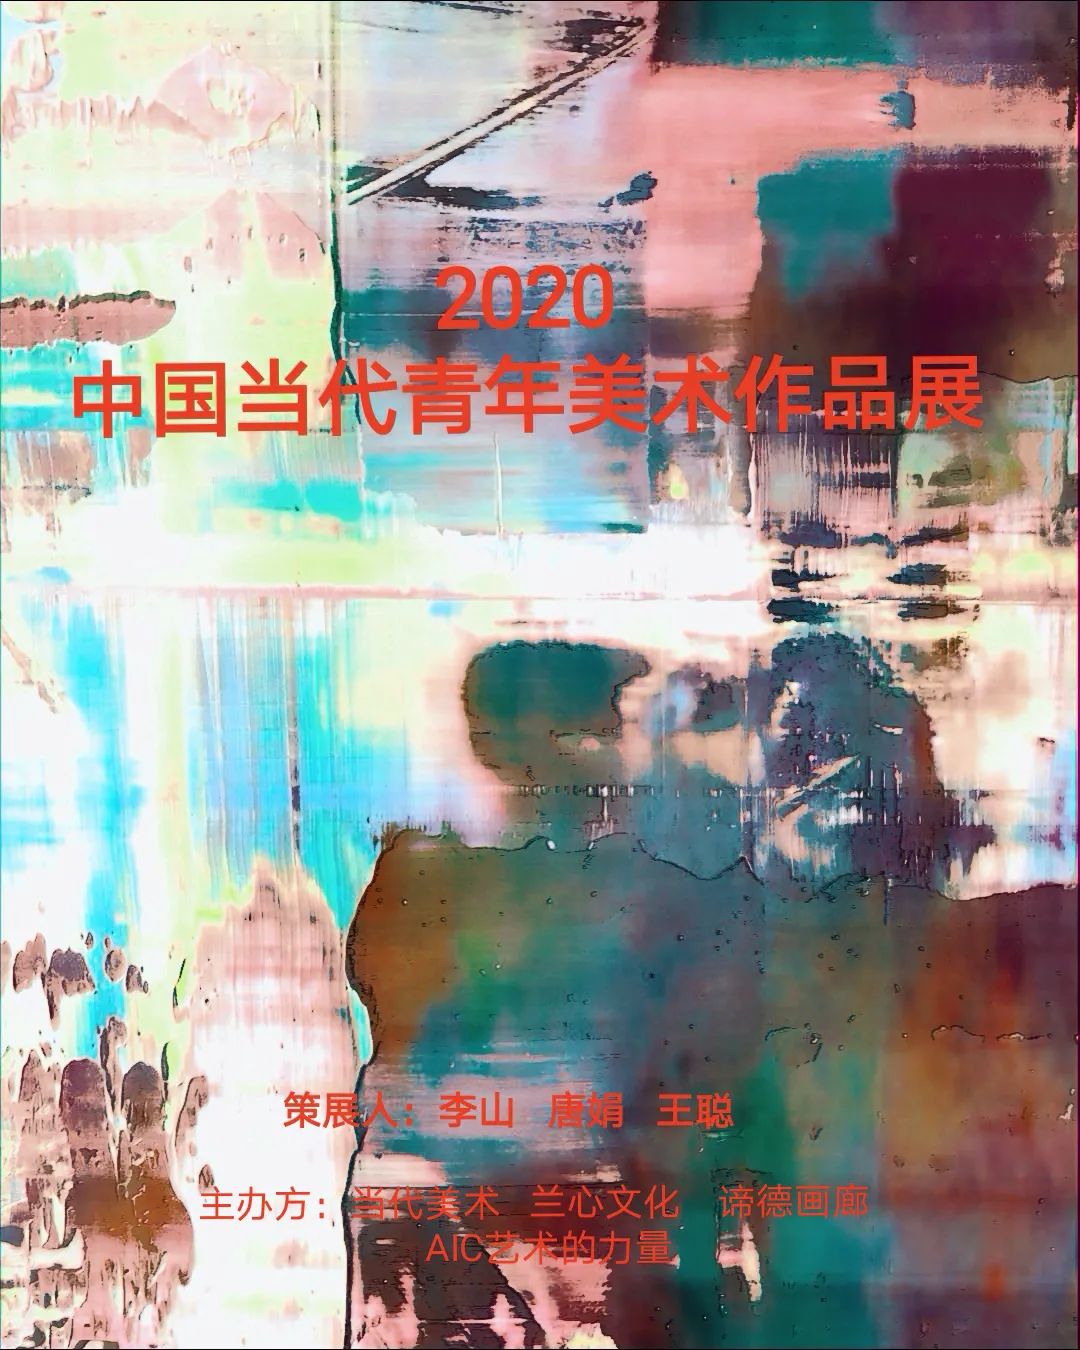 中国当代青年美术作品展作品集 Aic艺术的力量 微信公众号文章阅读 Wemp